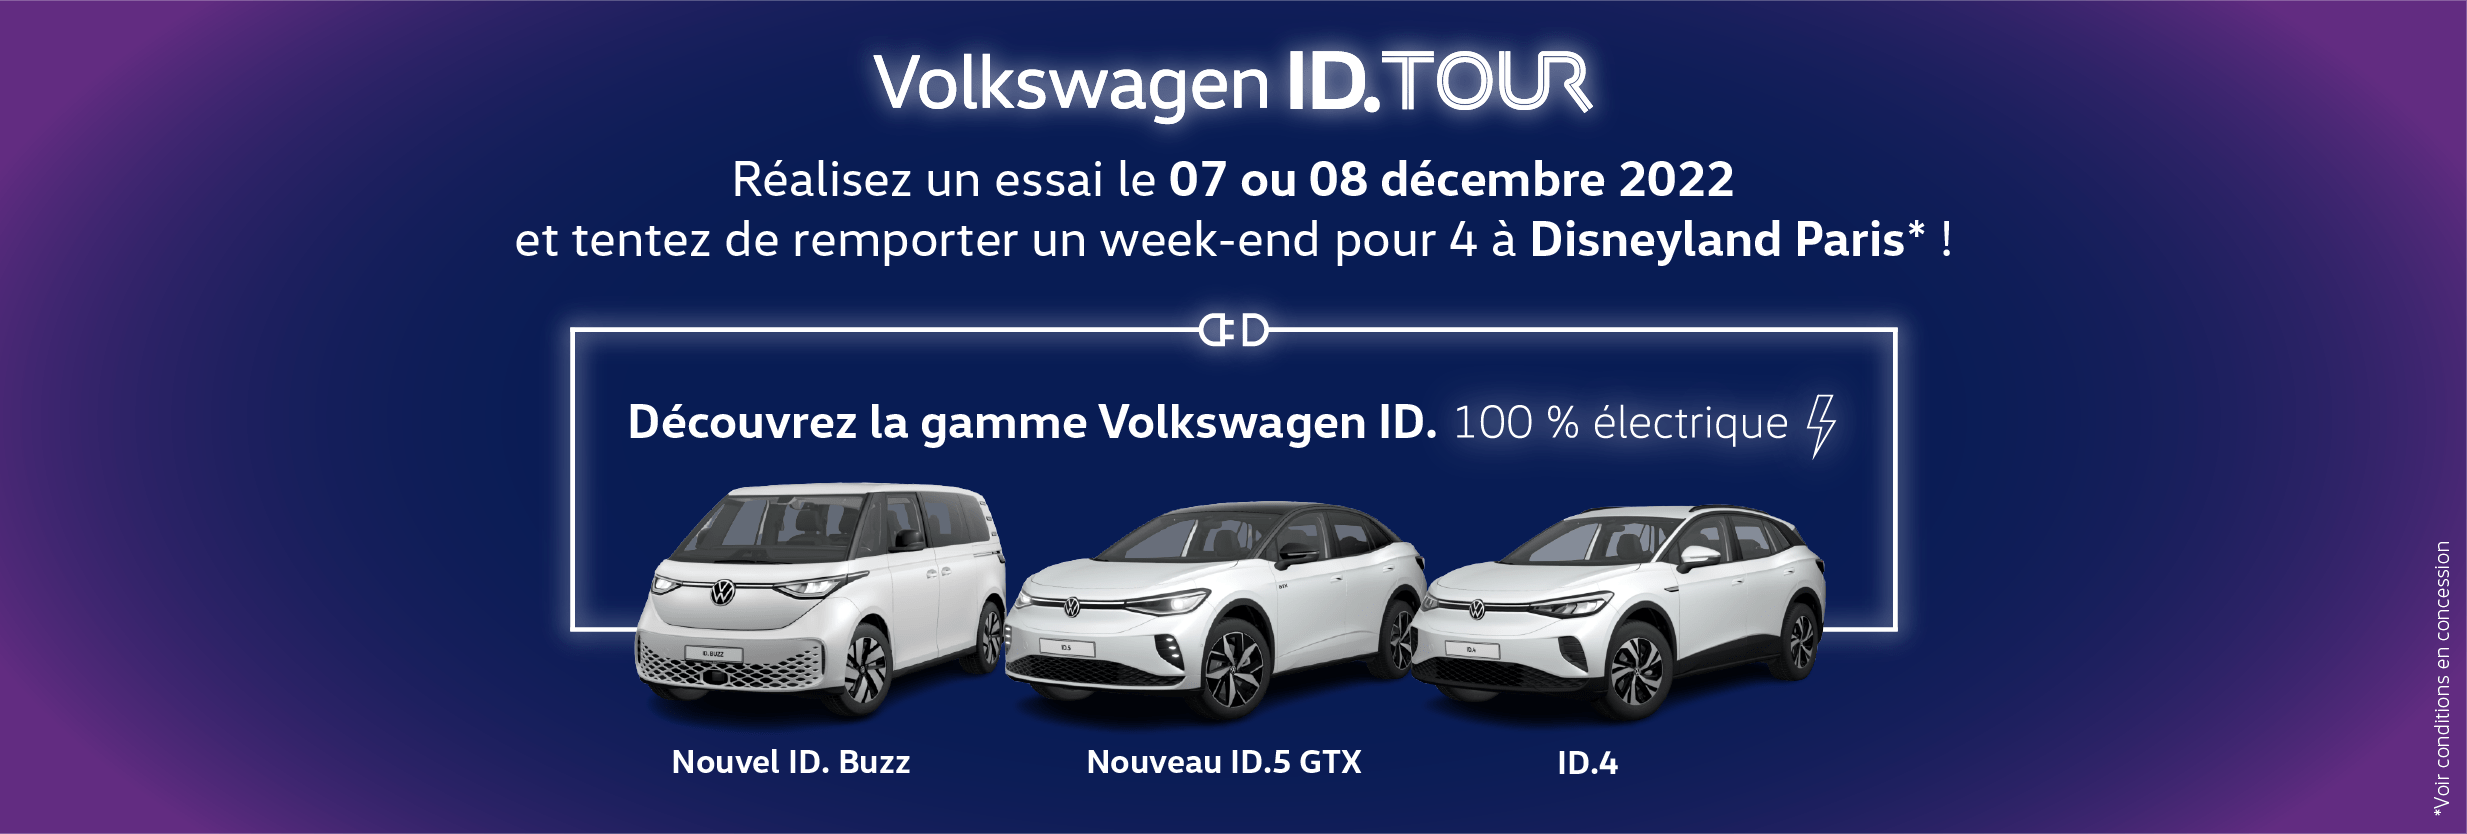 Volkswagen Villeneuve-d'Ascq AUTO-EXPO - Tentez de gagner un séjour à Disneyland pour 4 personnes avec l'ID Tour ! 